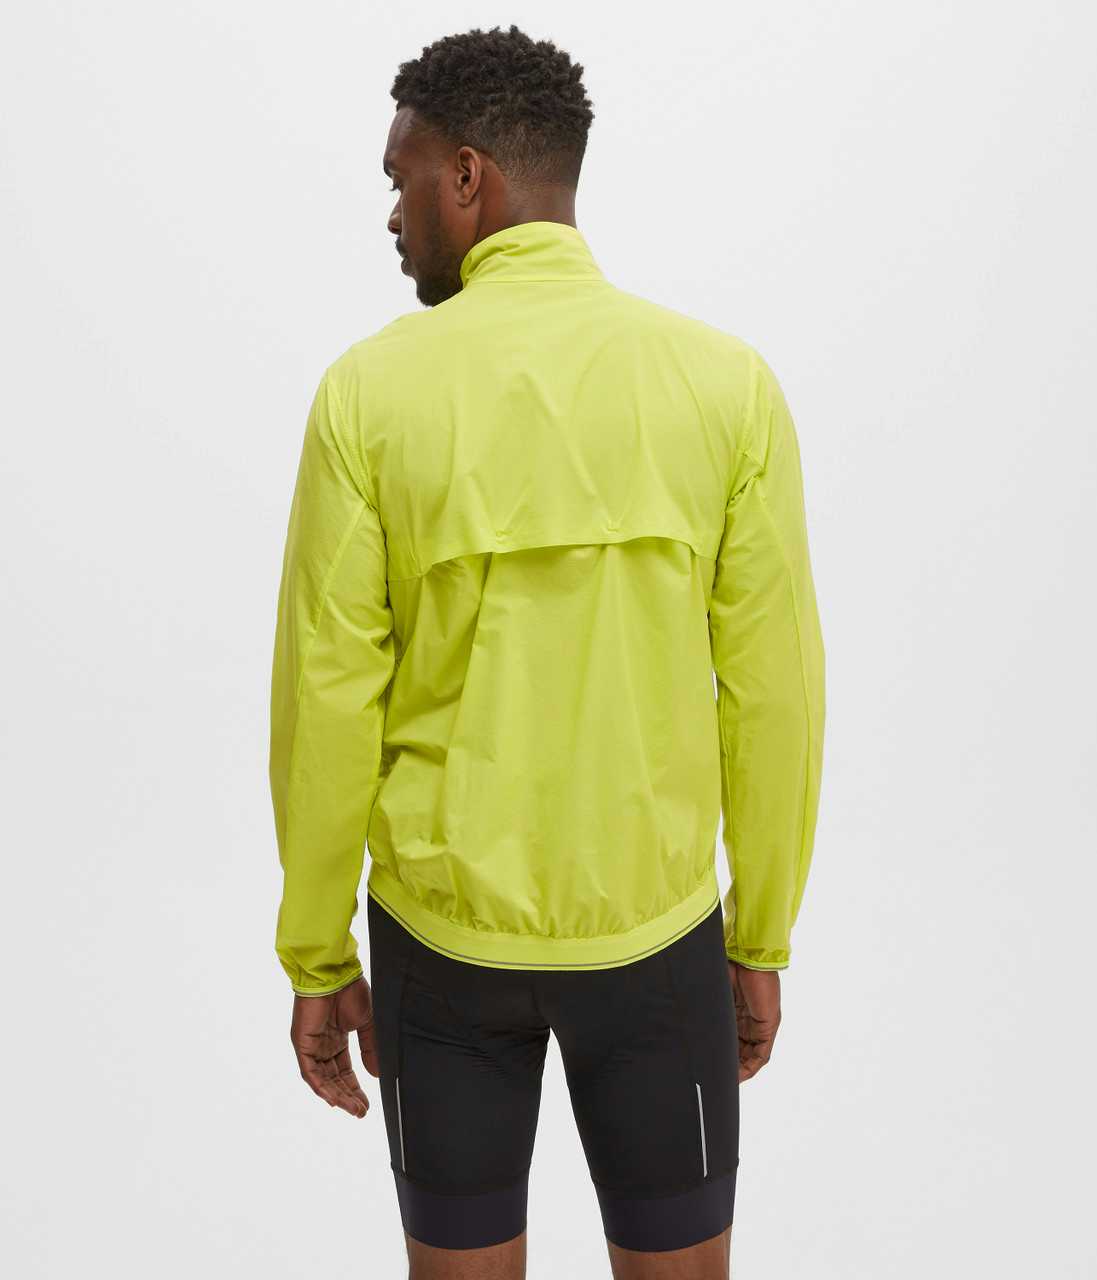 Equinox Windproof Cycle Jacket Acid Yellow